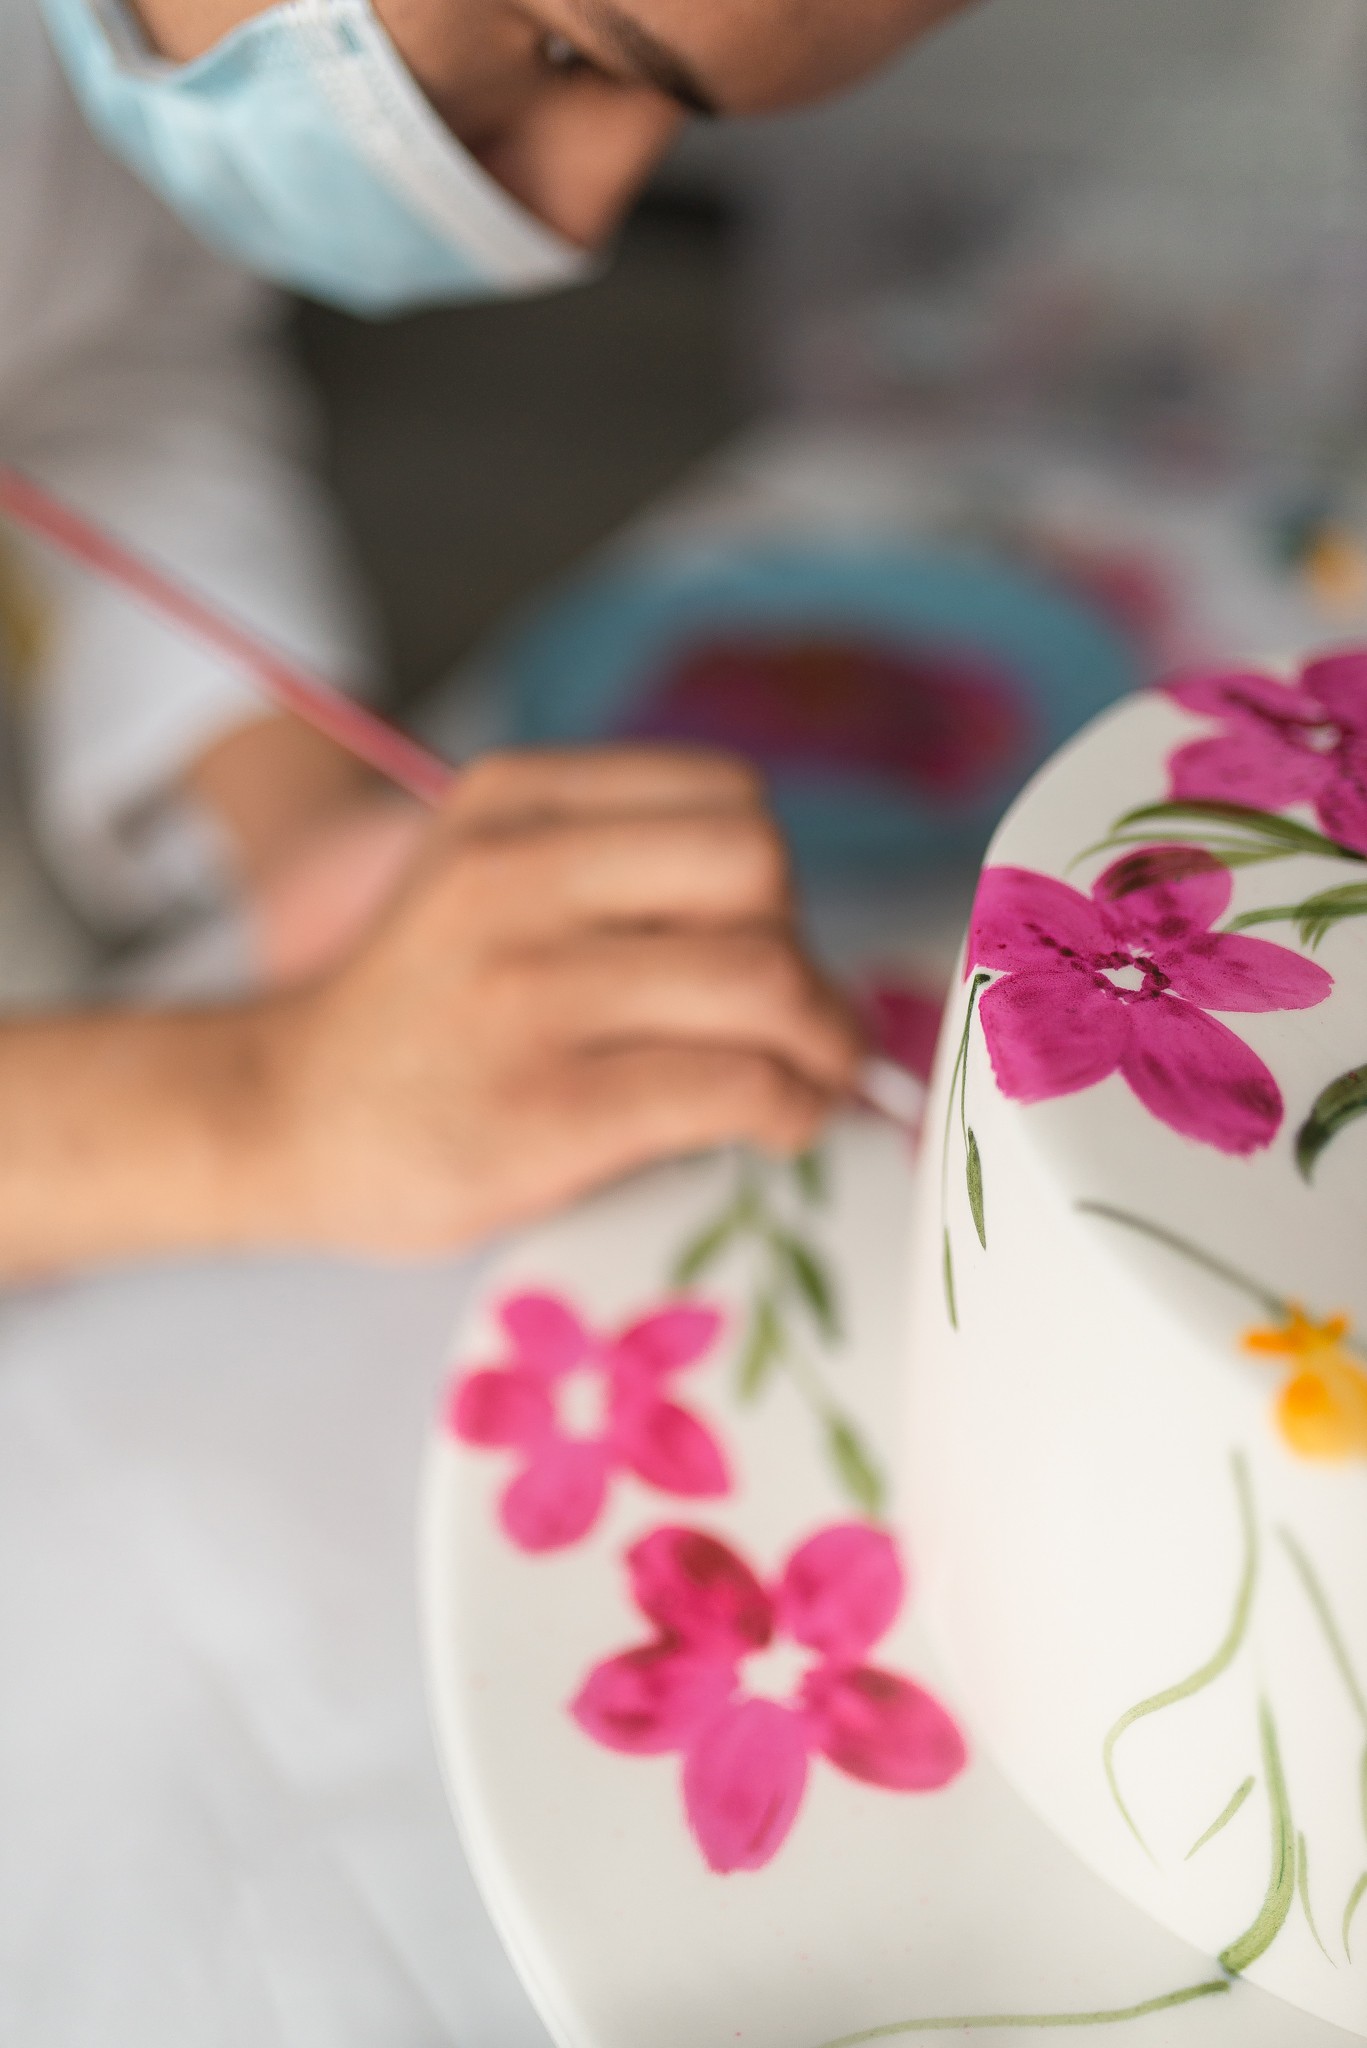 Empreendedor desenvolve técnica de pintura à mão para bolos e conquista  famosos - Pequenas Empresas Grandes Negócios